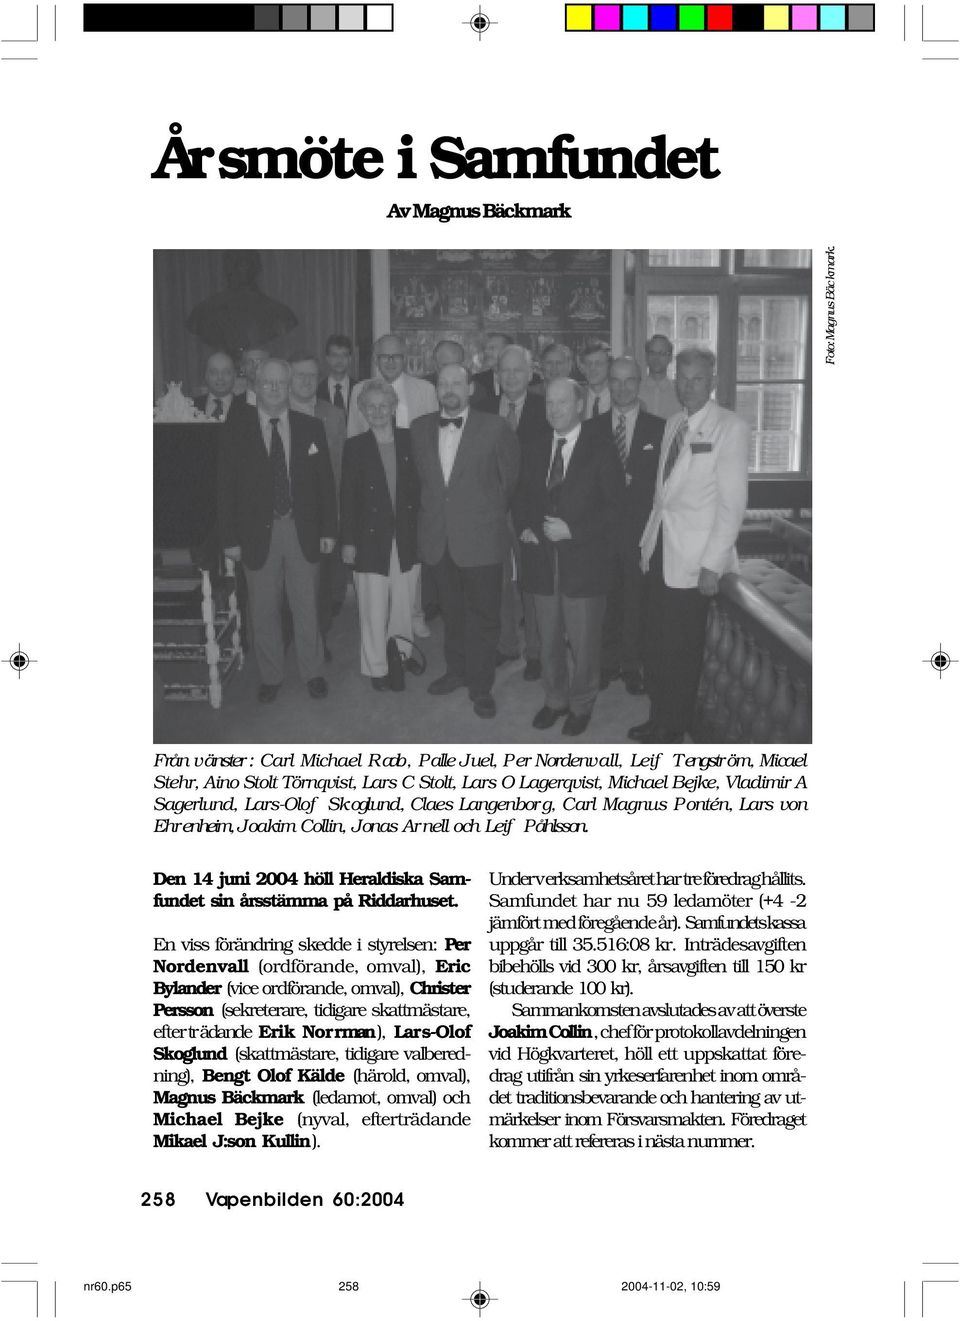 Skoglund, Claes Langenborg, Carl Magnus Pontén, Lars von Ehrenheim, Joakim Collin, Jonas Arnell och Leif Påhlsson. Den 14 juni 2004 höll Heraldiska Samfundet sin årsstämma på Riddarhuset.